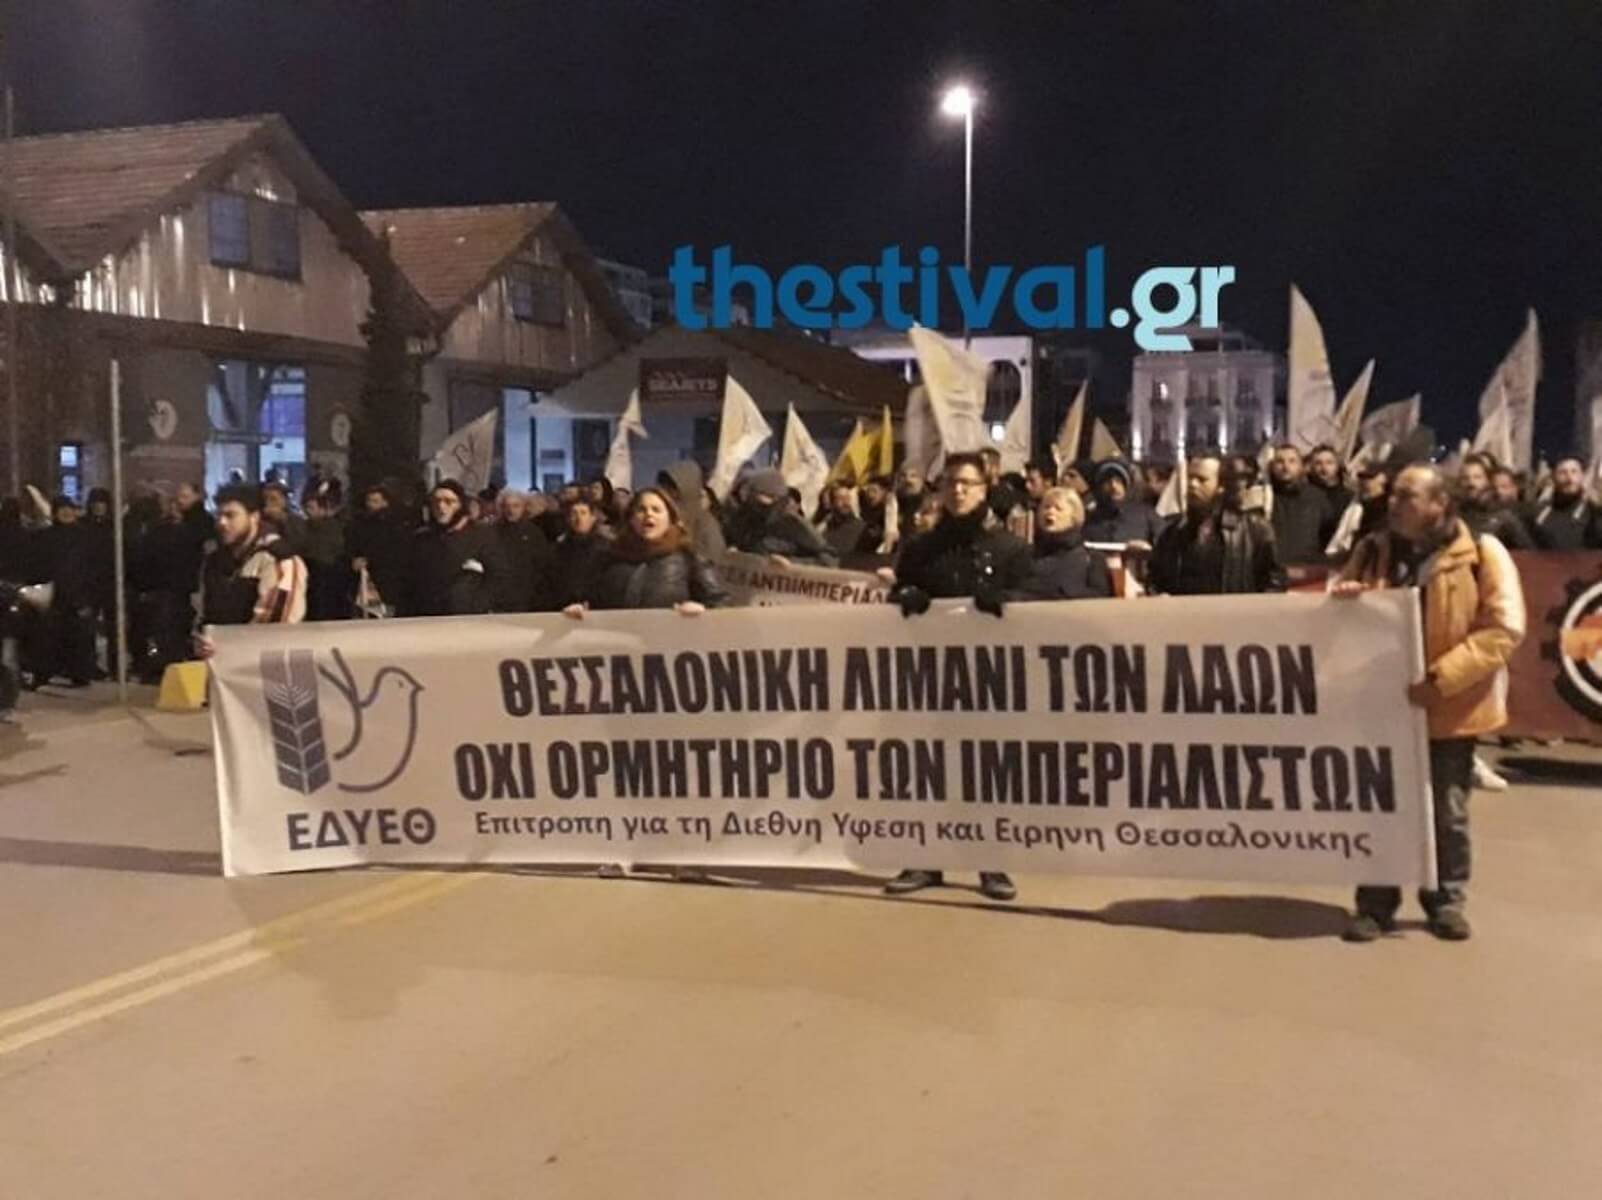 Θεσσαλονίκη: Πορεία προς το λιμάνι από την Επιτροπή για τη Διεθνή Ύφεση και Ειρήνη